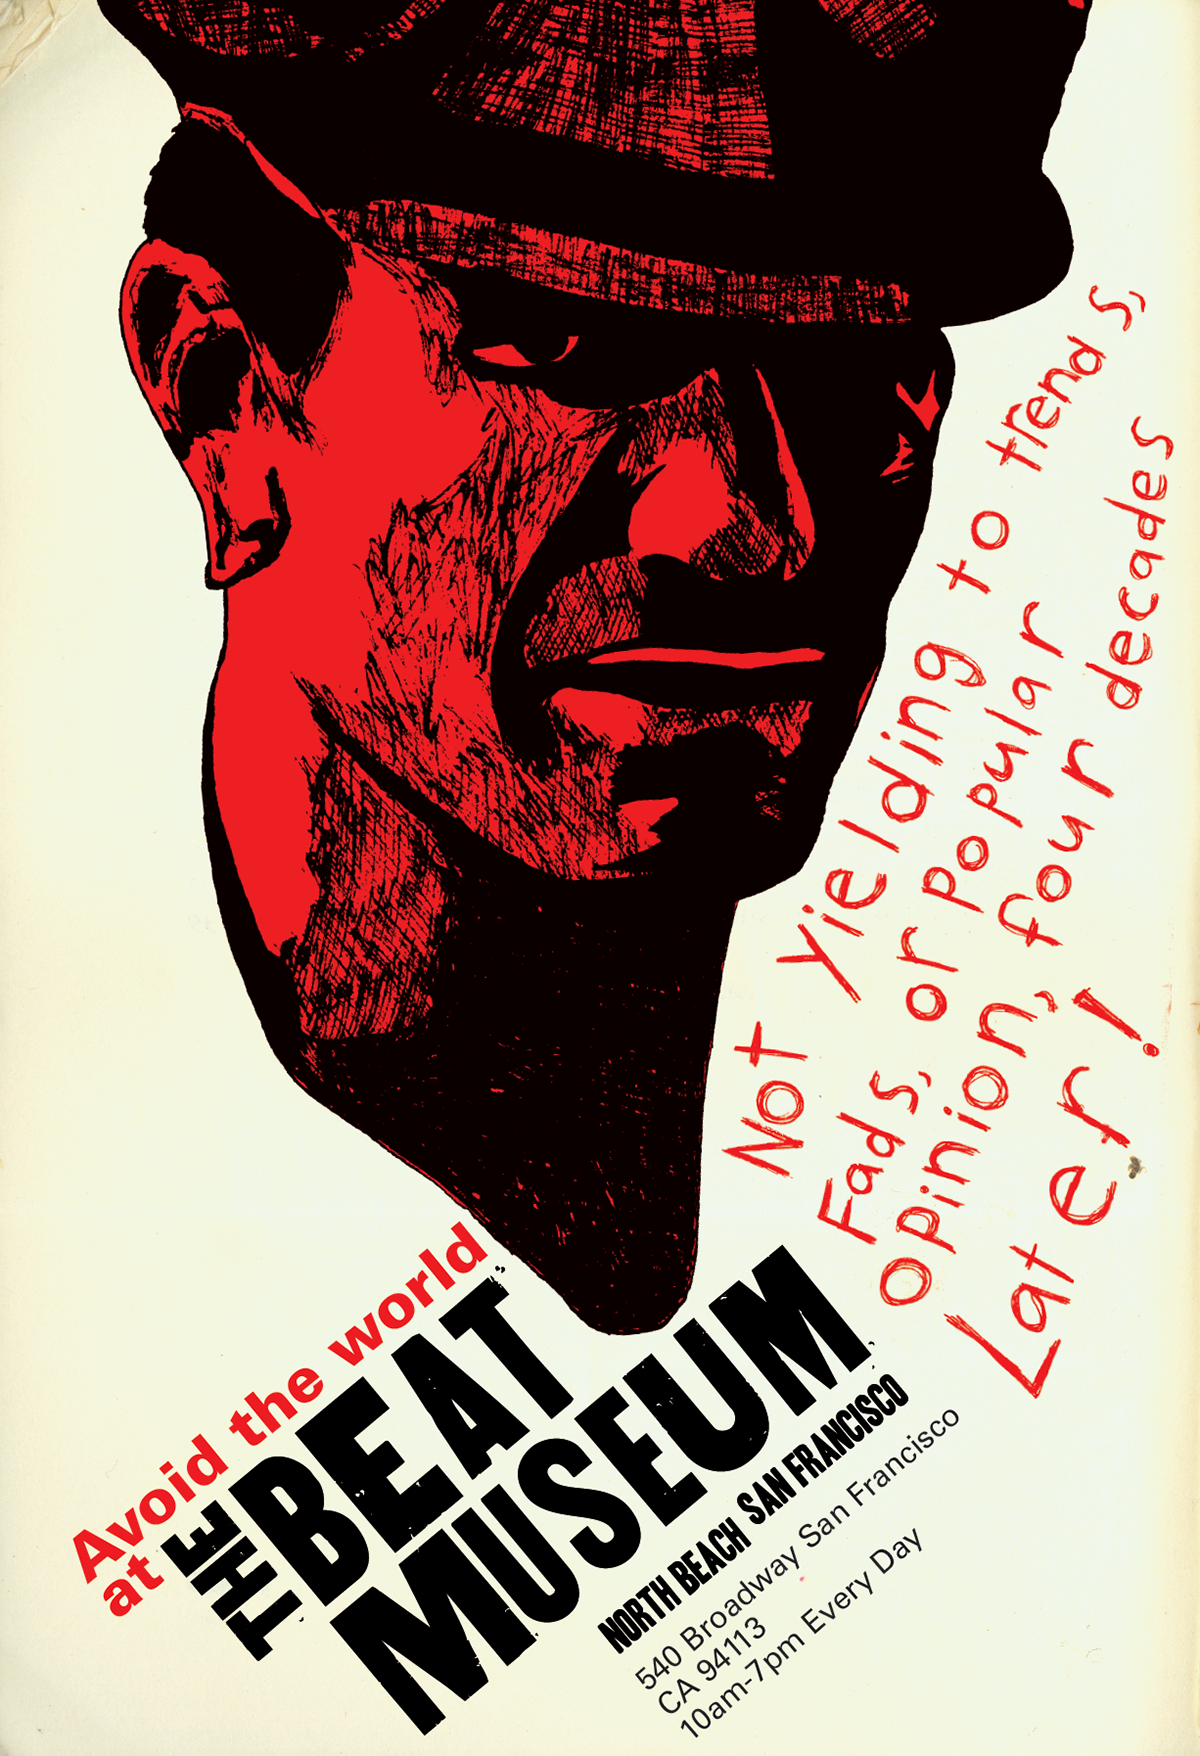 beats William S. Burroughs Jack Kerouac allen ginsberg posters museum advertisement